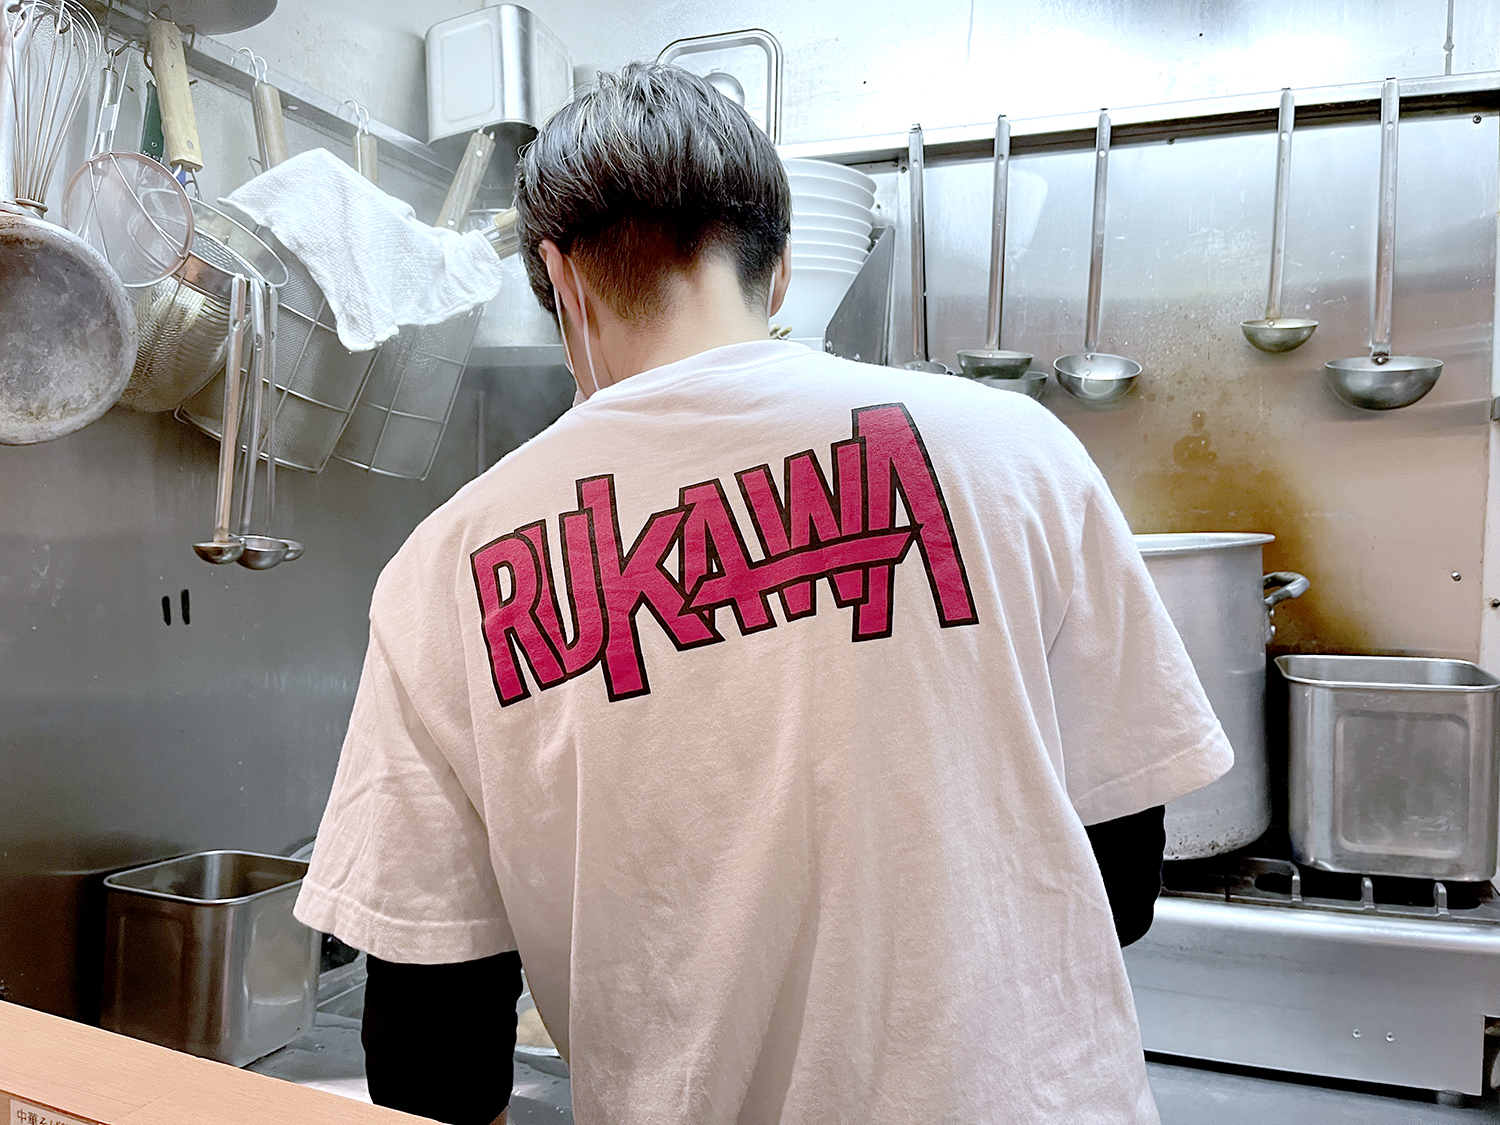 『SLAM DUNK』のロゴを彷彿とさせる『RUKAWA』のオリジナルTシャツ。